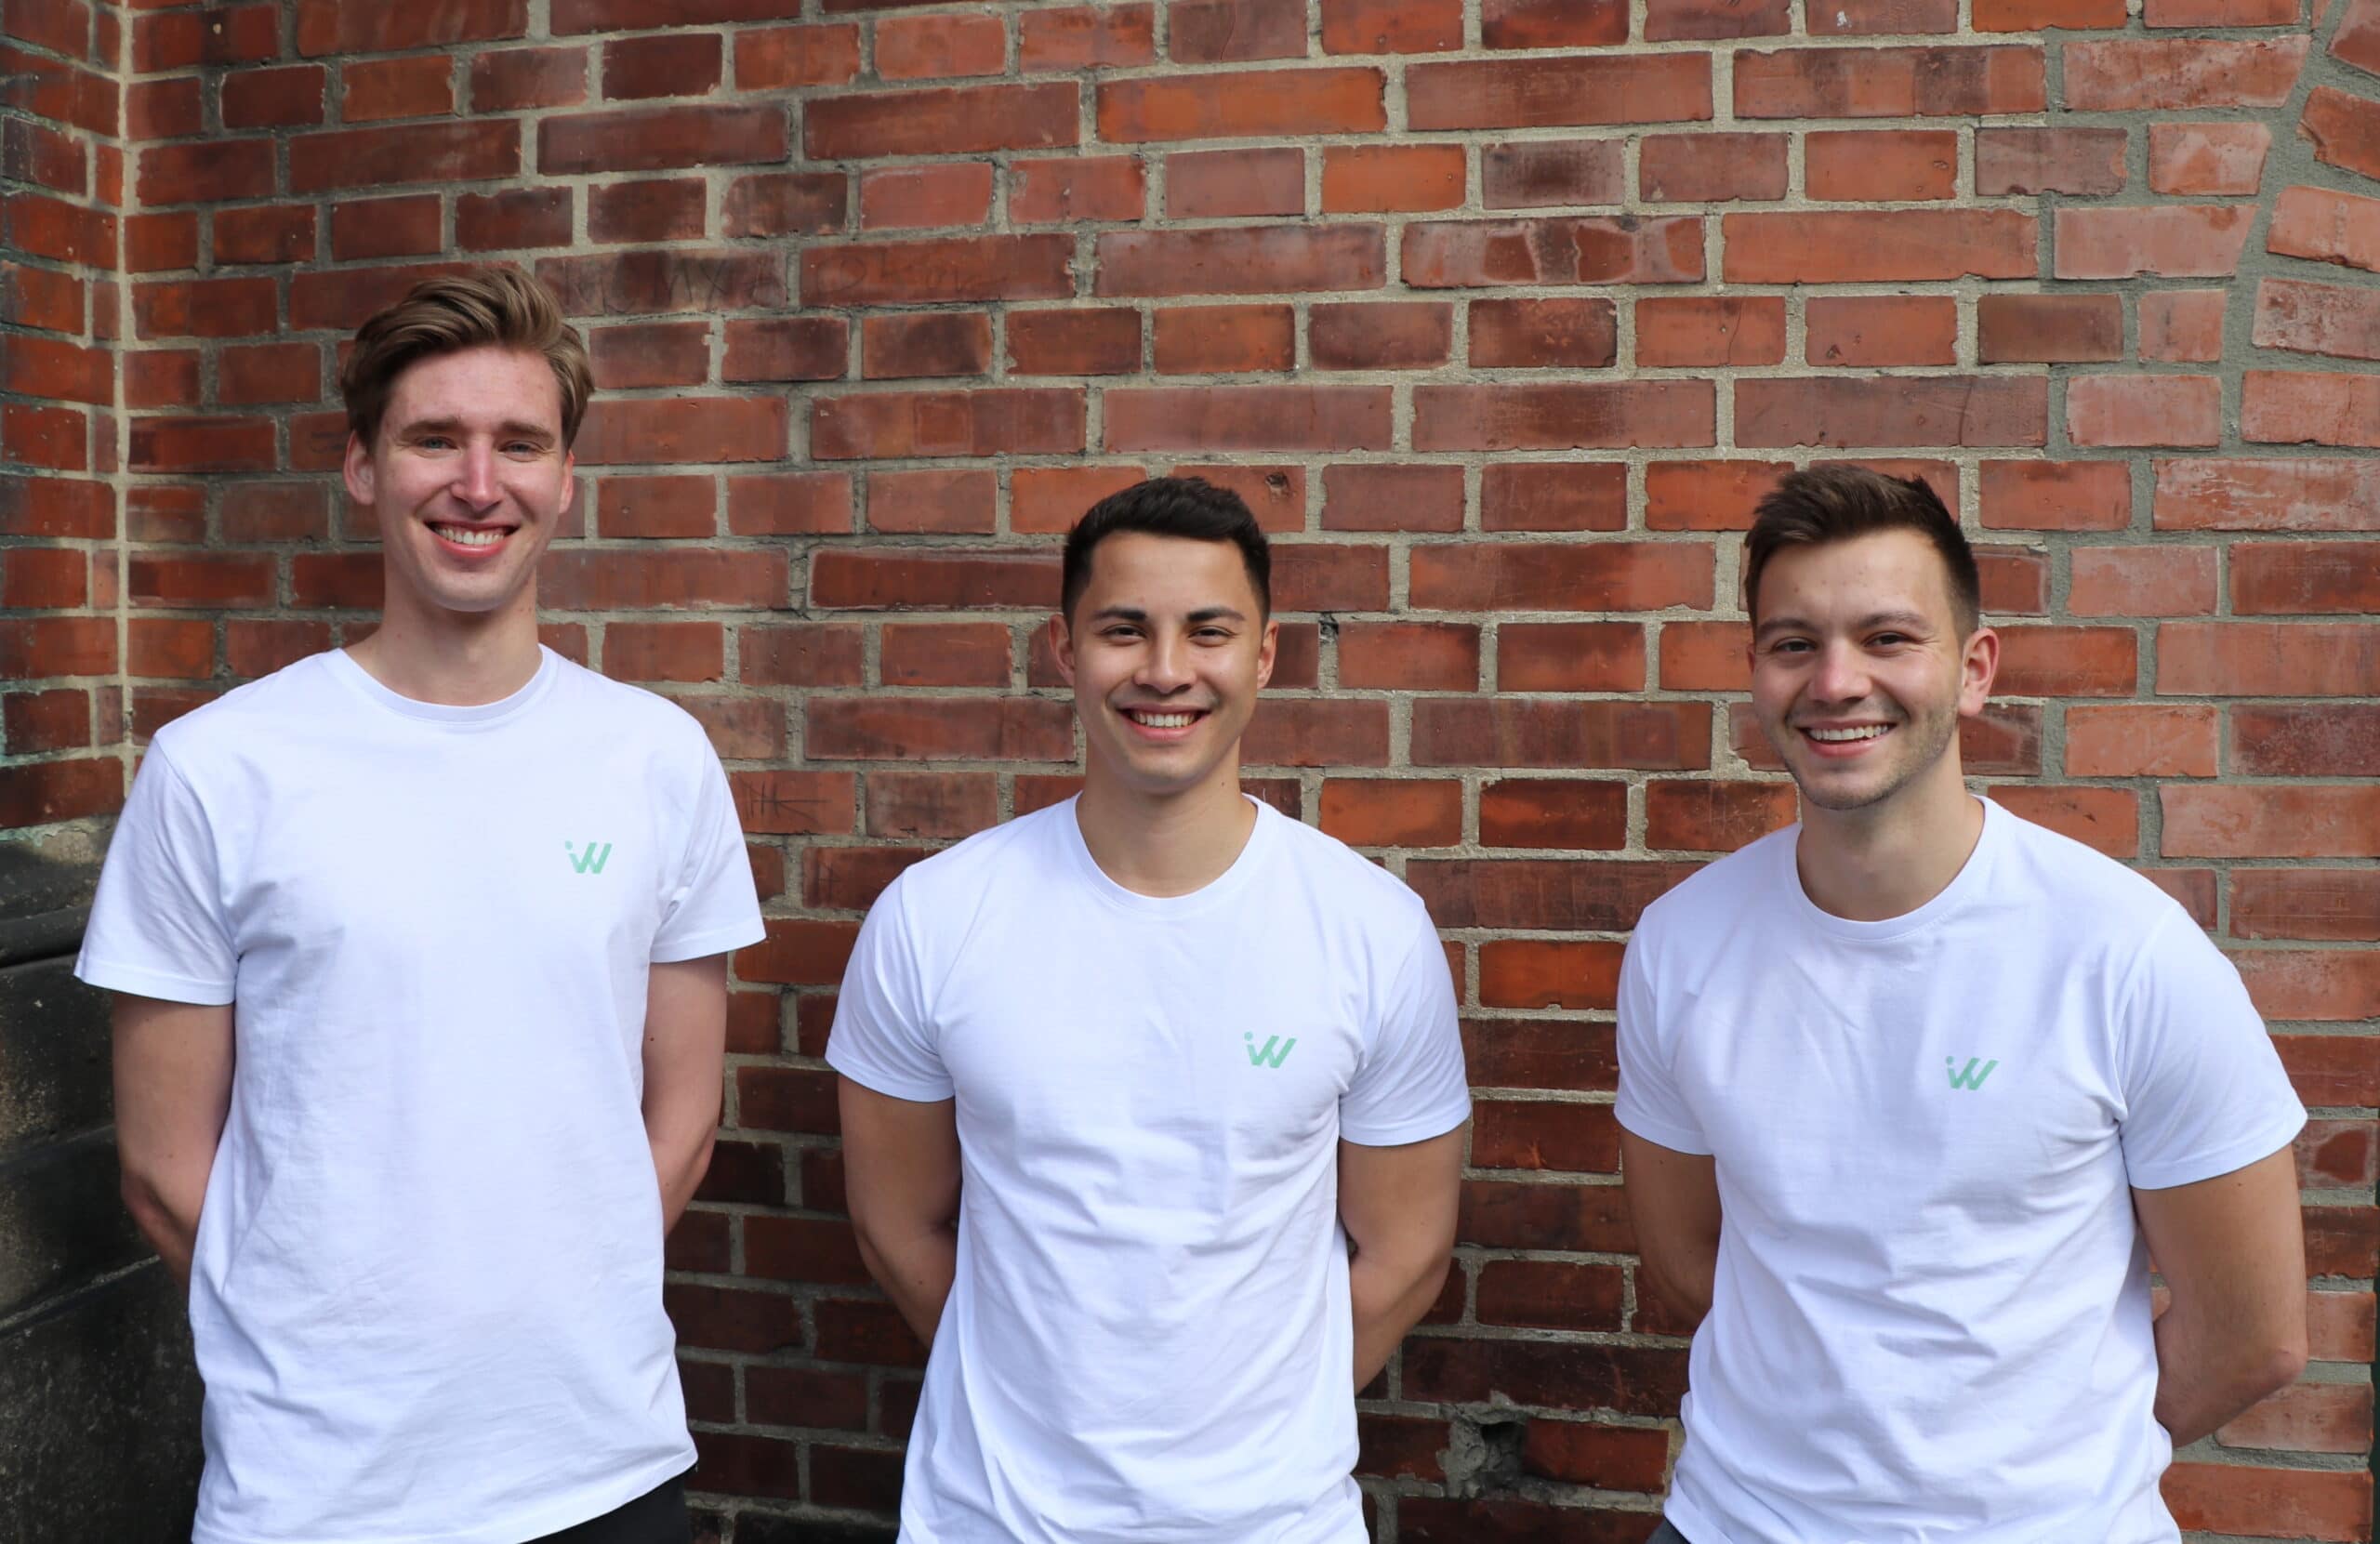 Die drei Gründer von invest wise mit einem Tshirt mit dem Unternehmenslogo